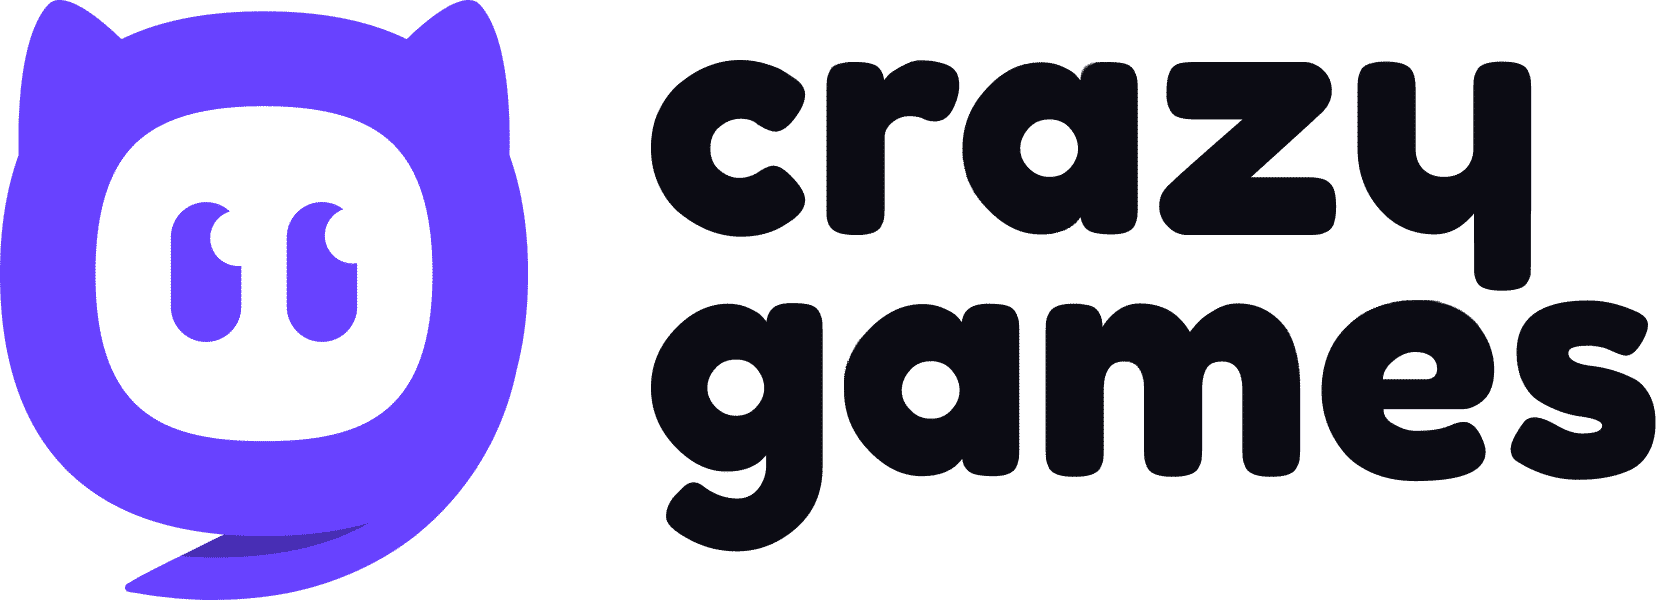 crazygames.com Competitors - Top Sites Like crazygames.com